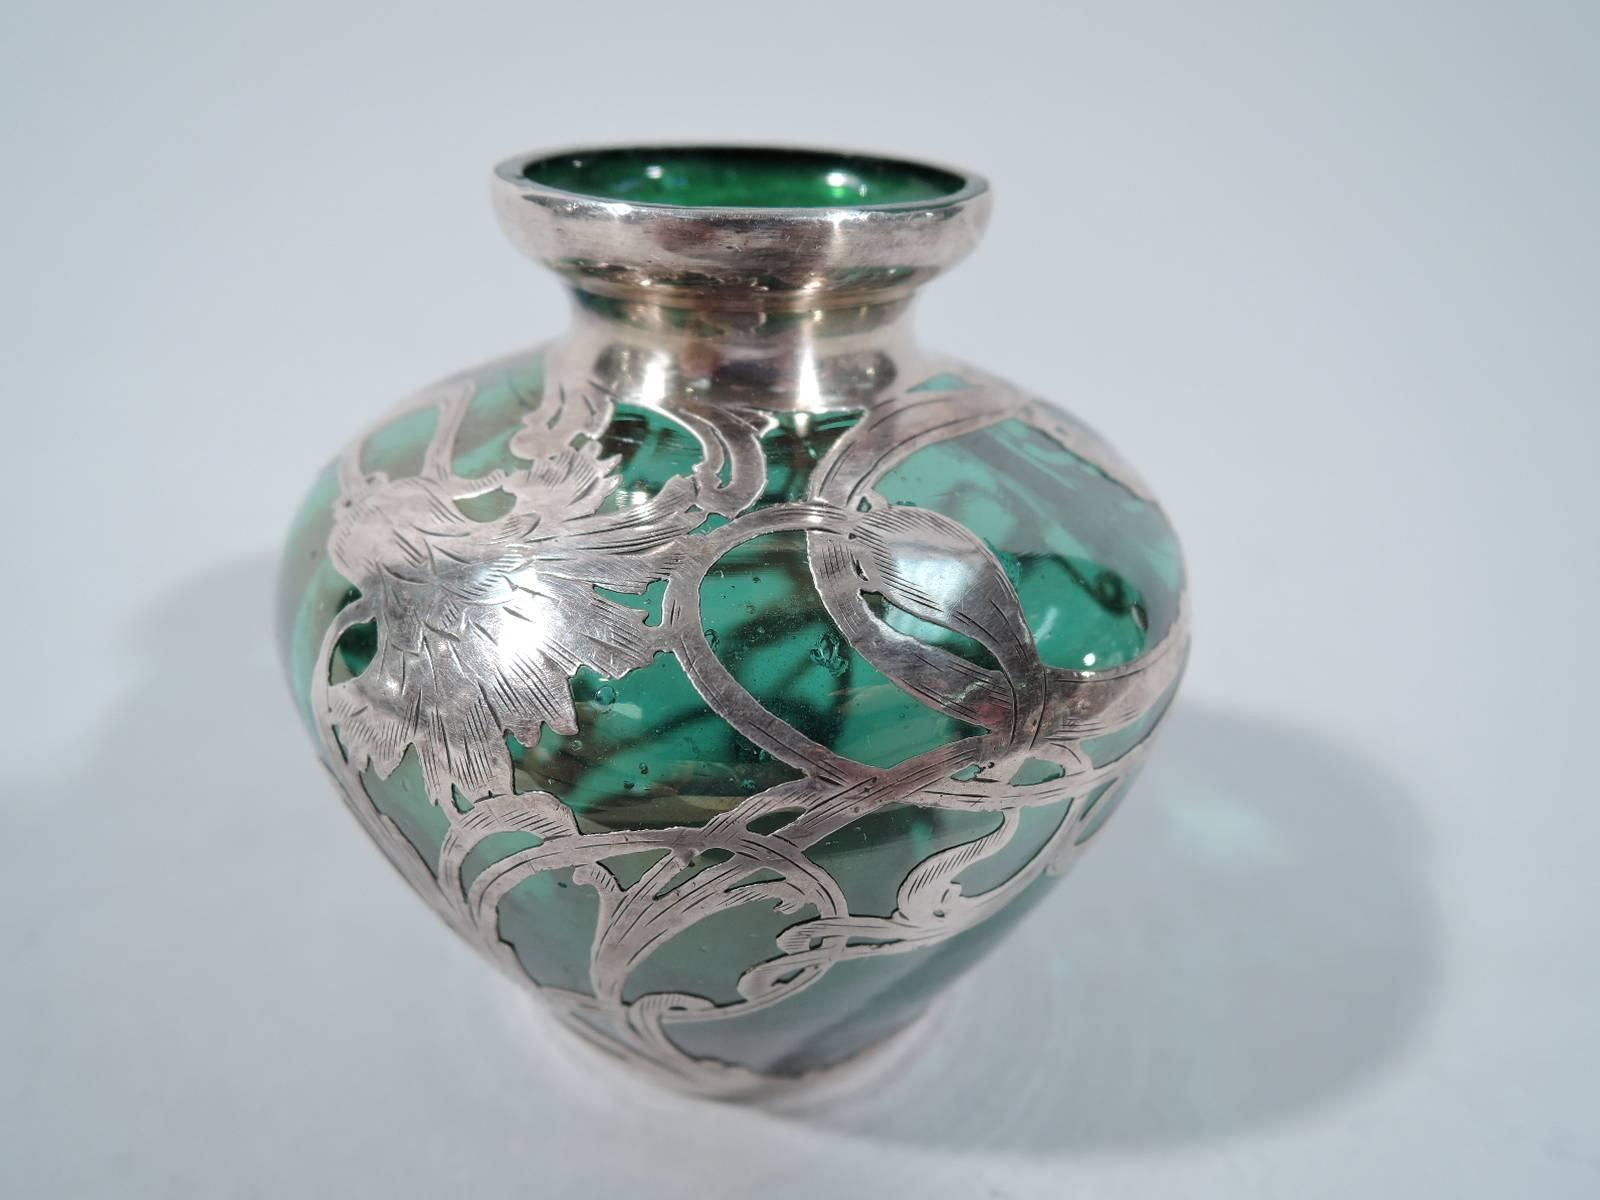 La Pierre Art Nouveau Green Glass Vase with Silver Overlay (Art nouveau)